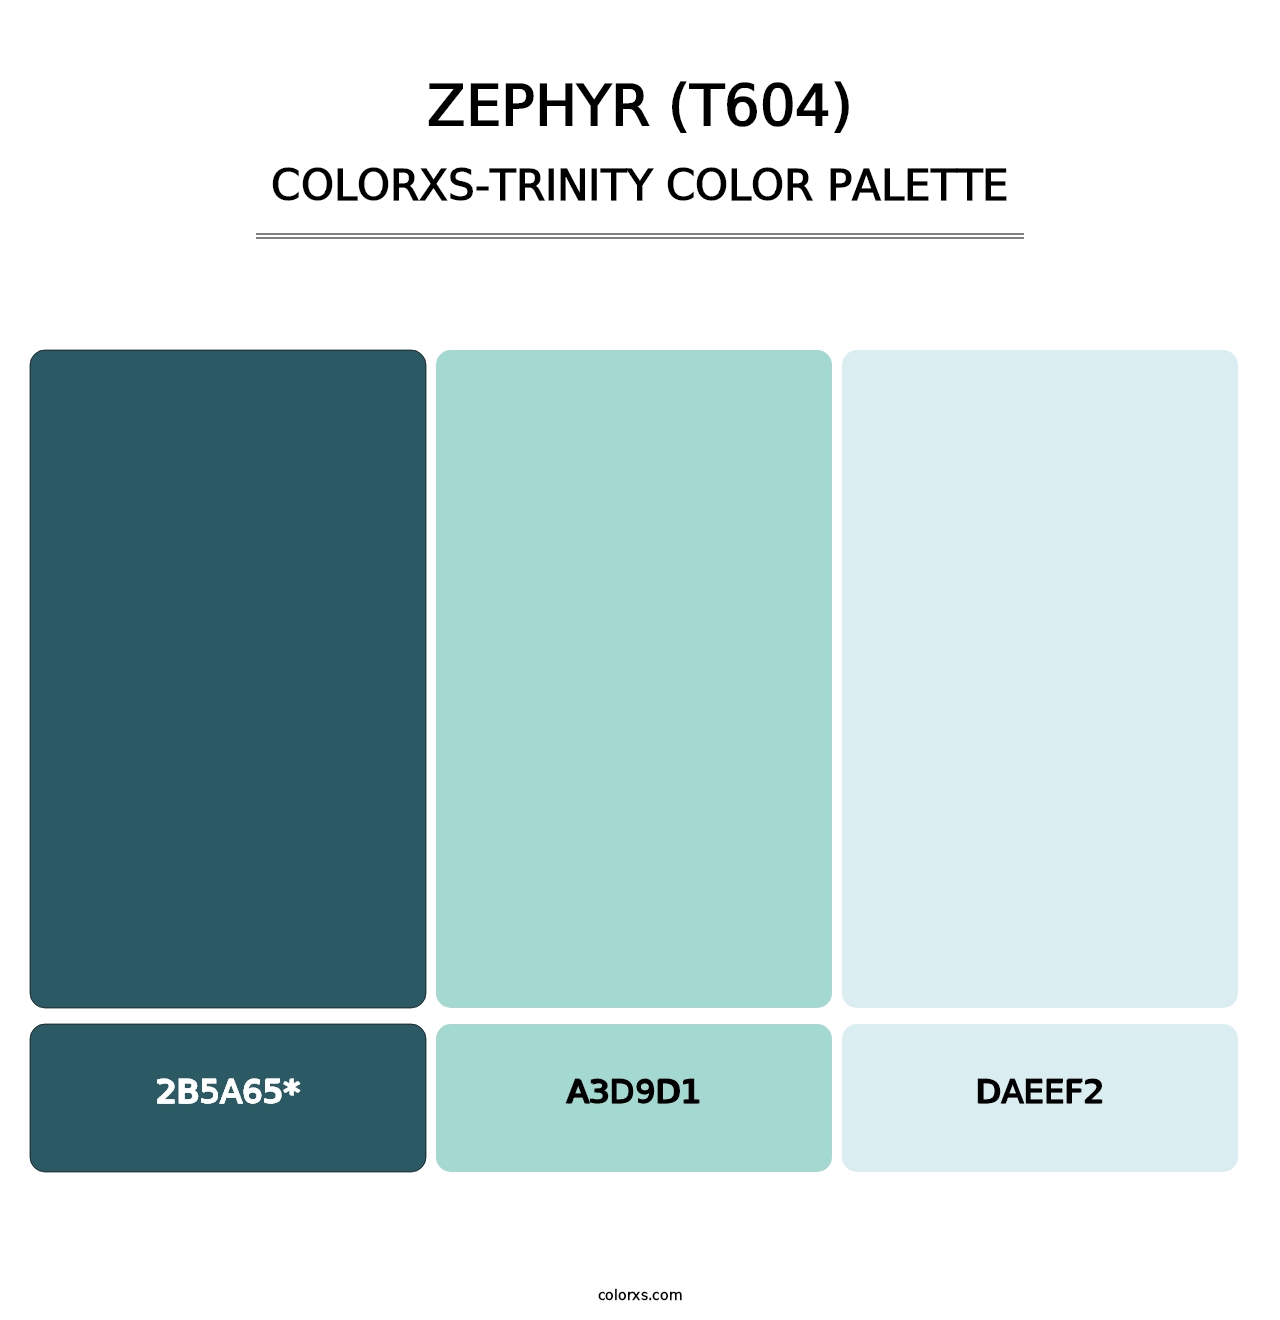 Zephyr (T604) - Colorxs Trinity Palette